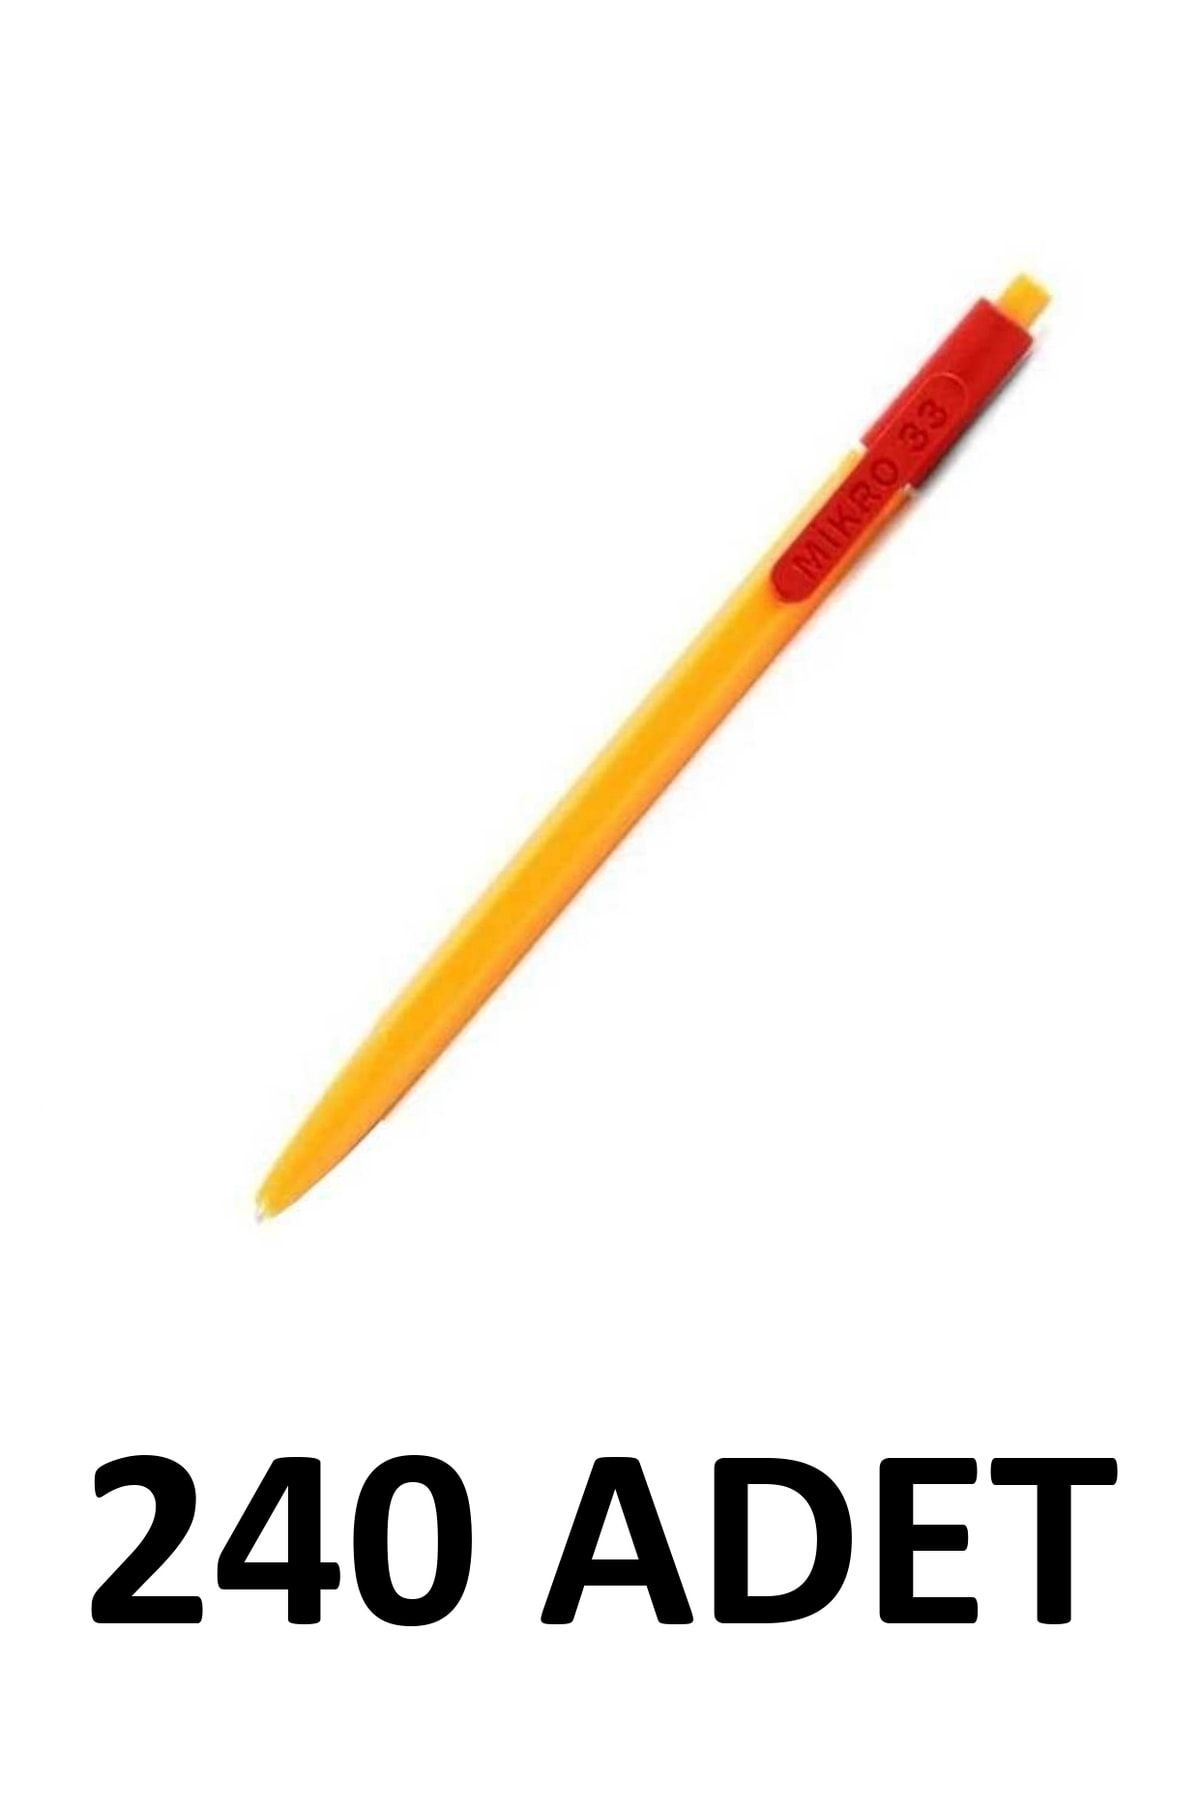 Mikro 240 Adet Basmalı Tükenmez Kalem Kahveci Kalemi Kırmızı M-33